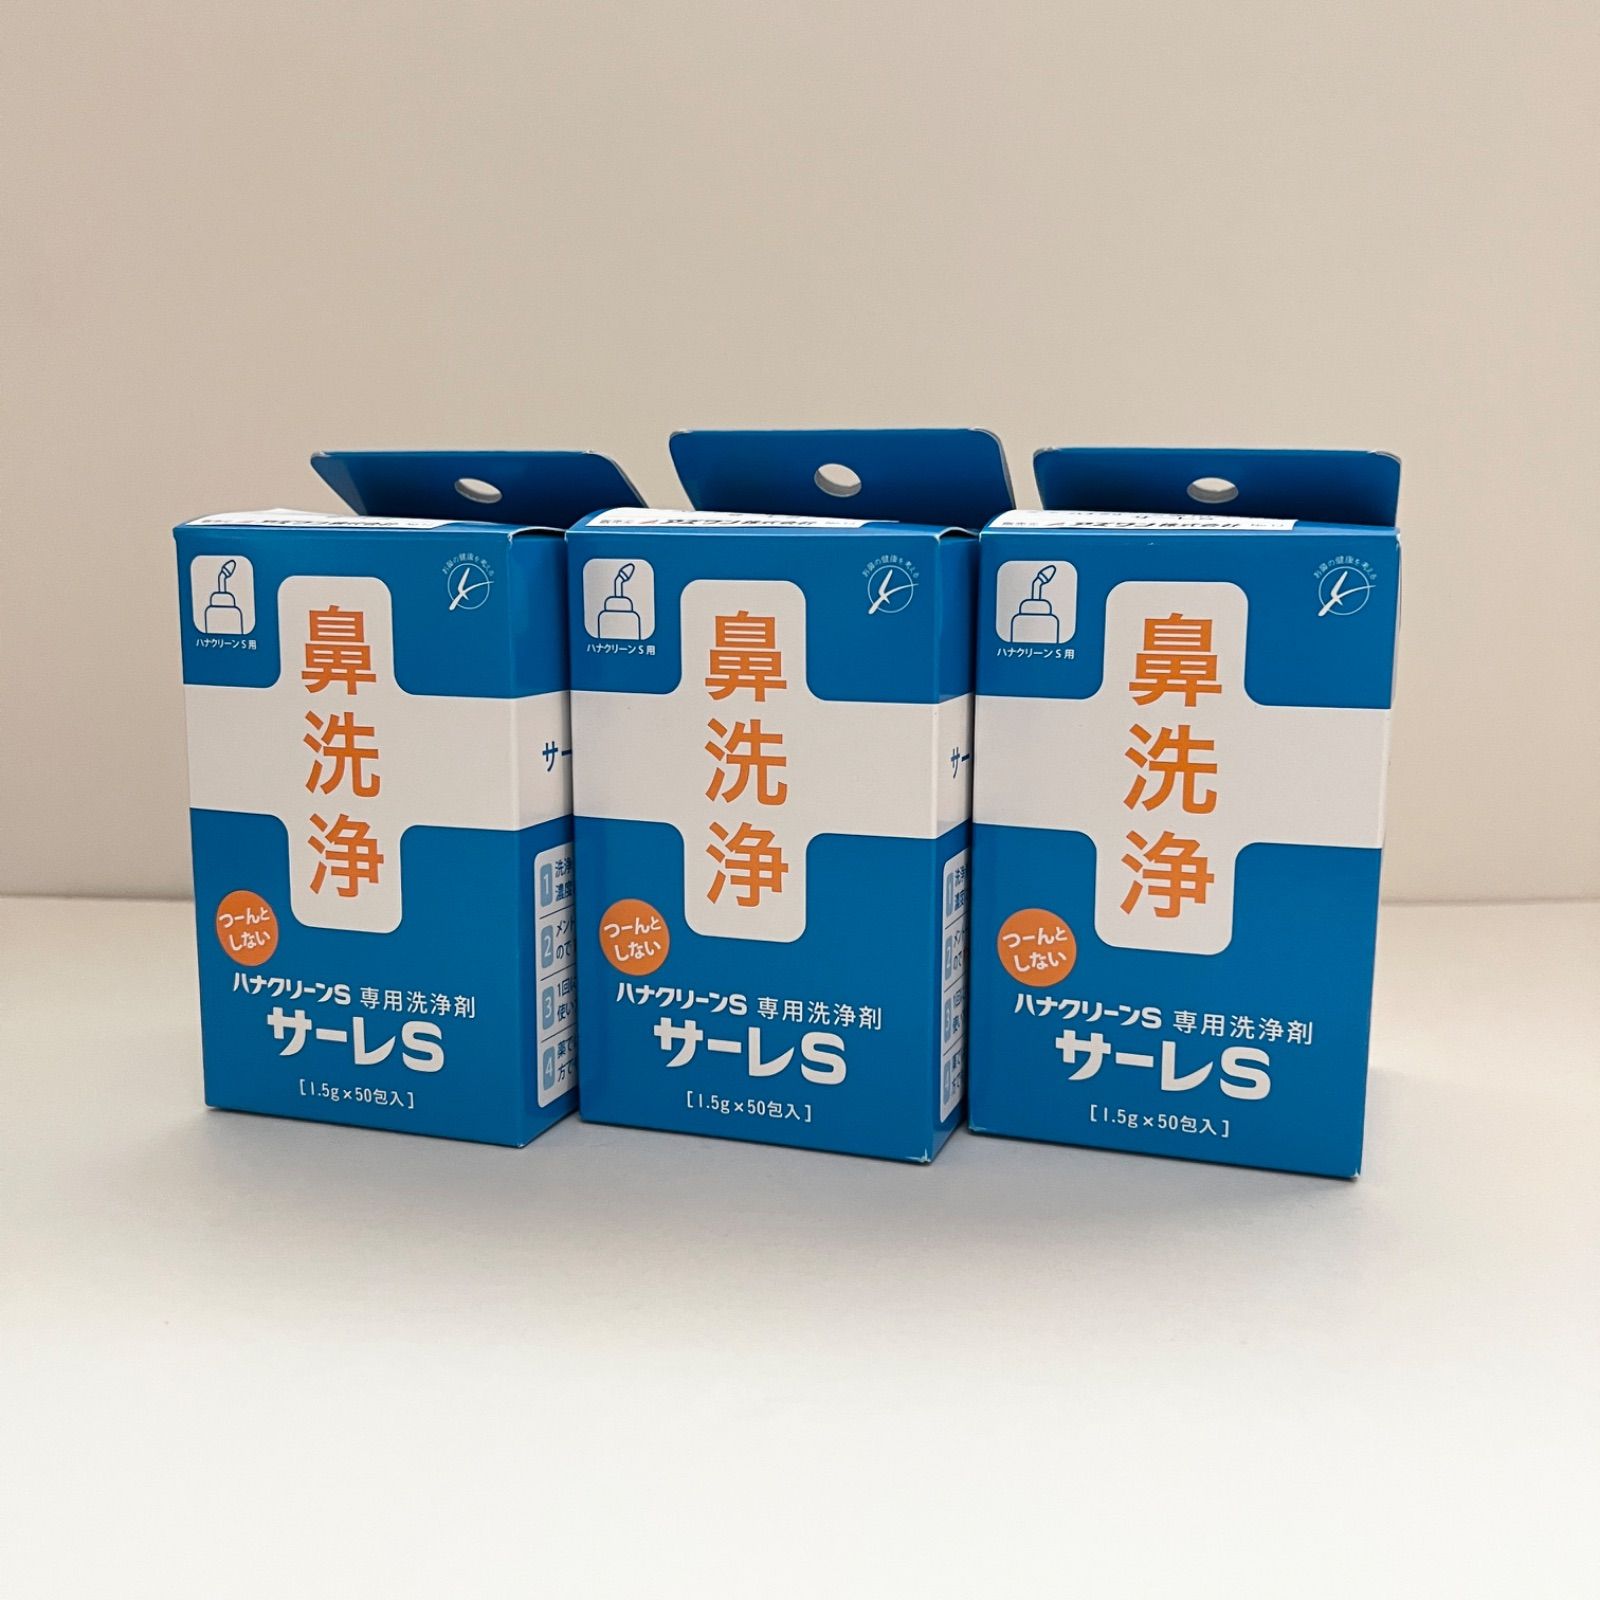 ハナクリーンS 専用洗浄剤 サーレS 1.5g×50包 3箱セット - モエギshop - メルカリ